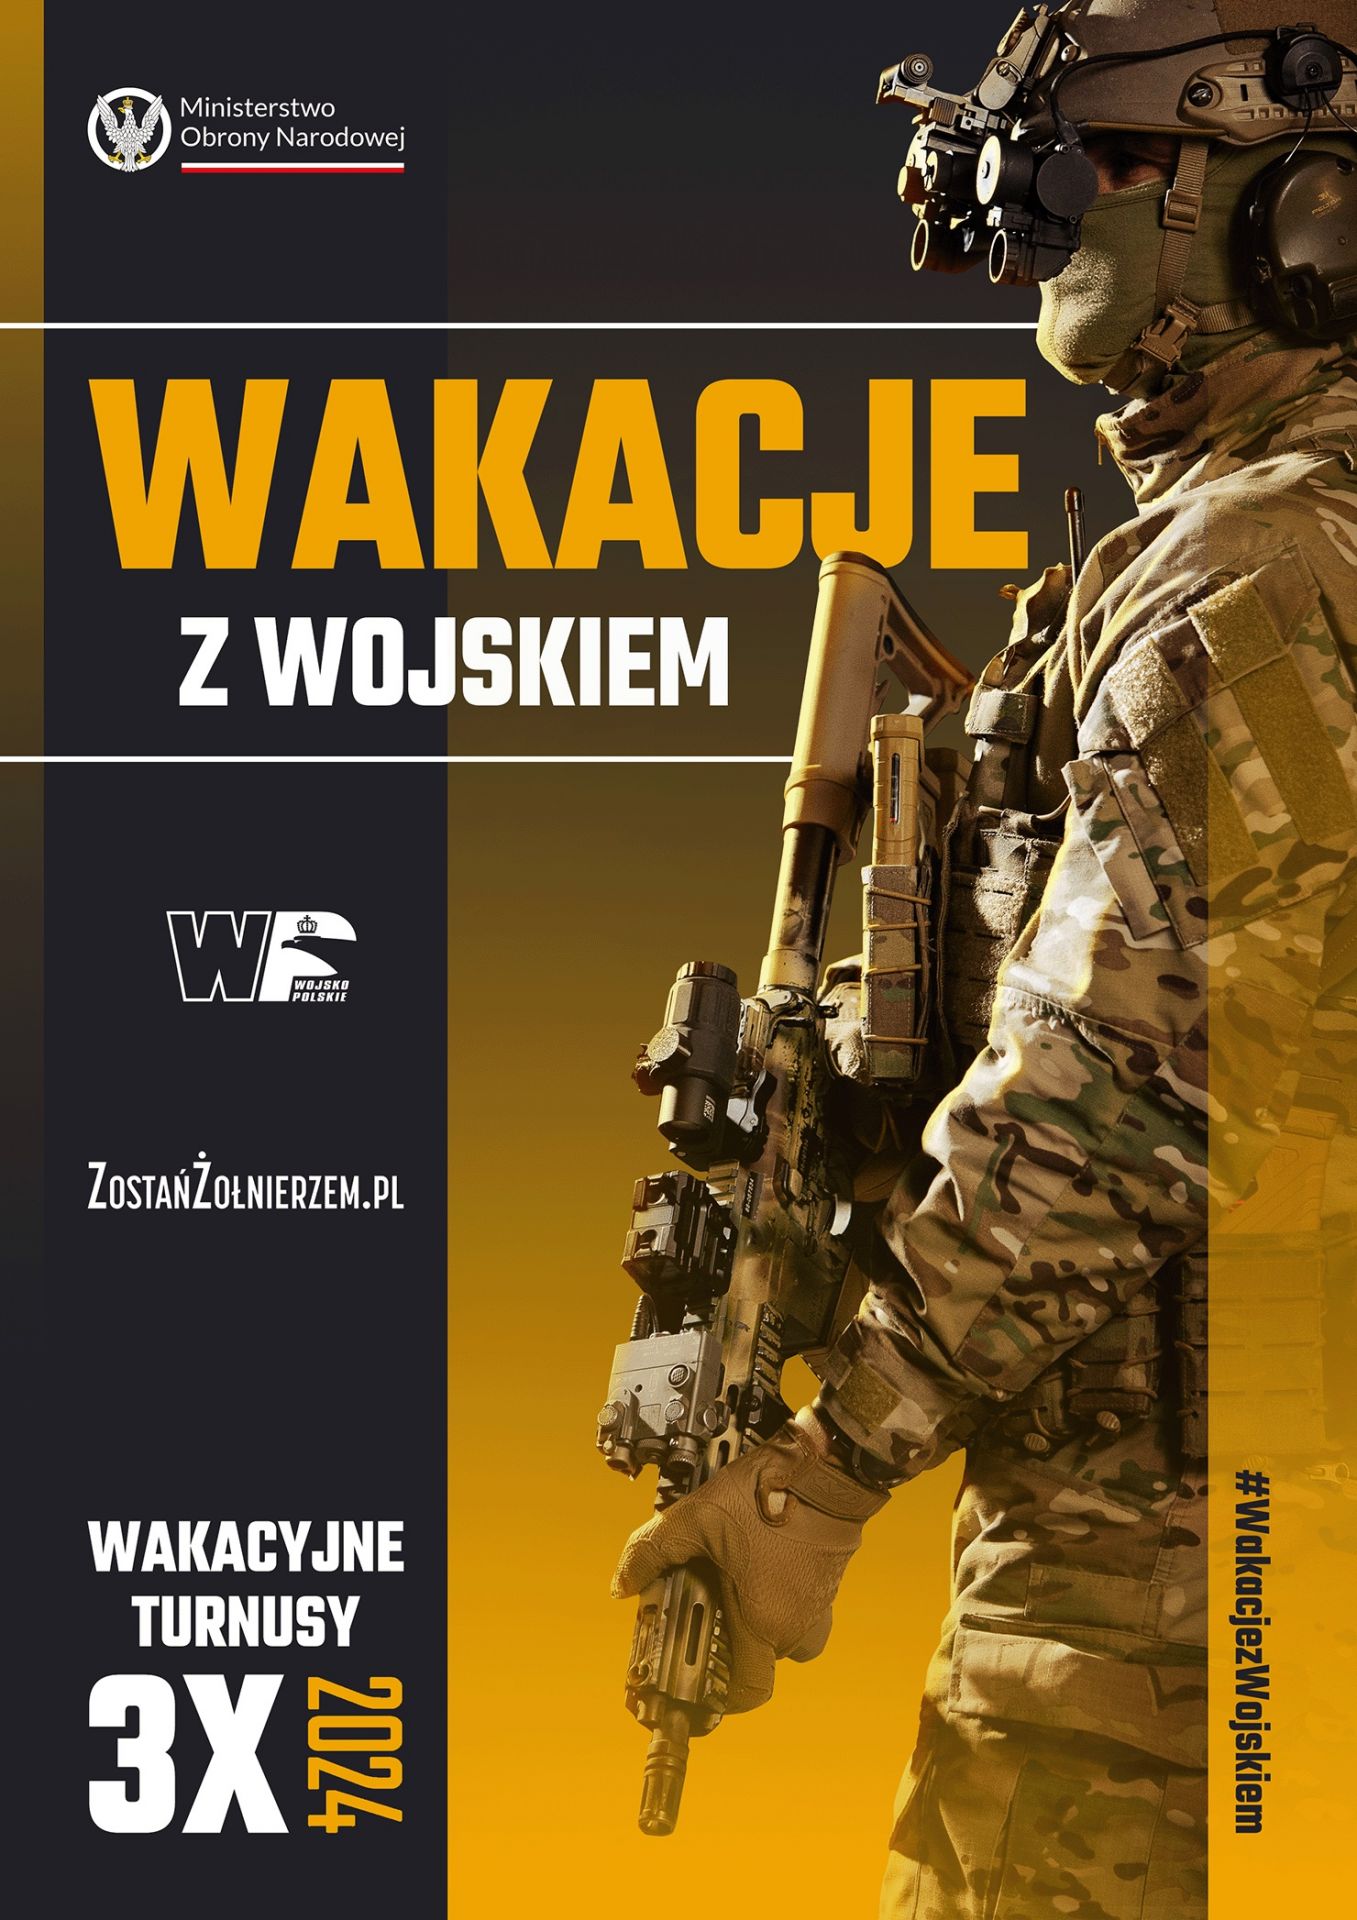 Plakat promujący akcję wakacje z wojskiem